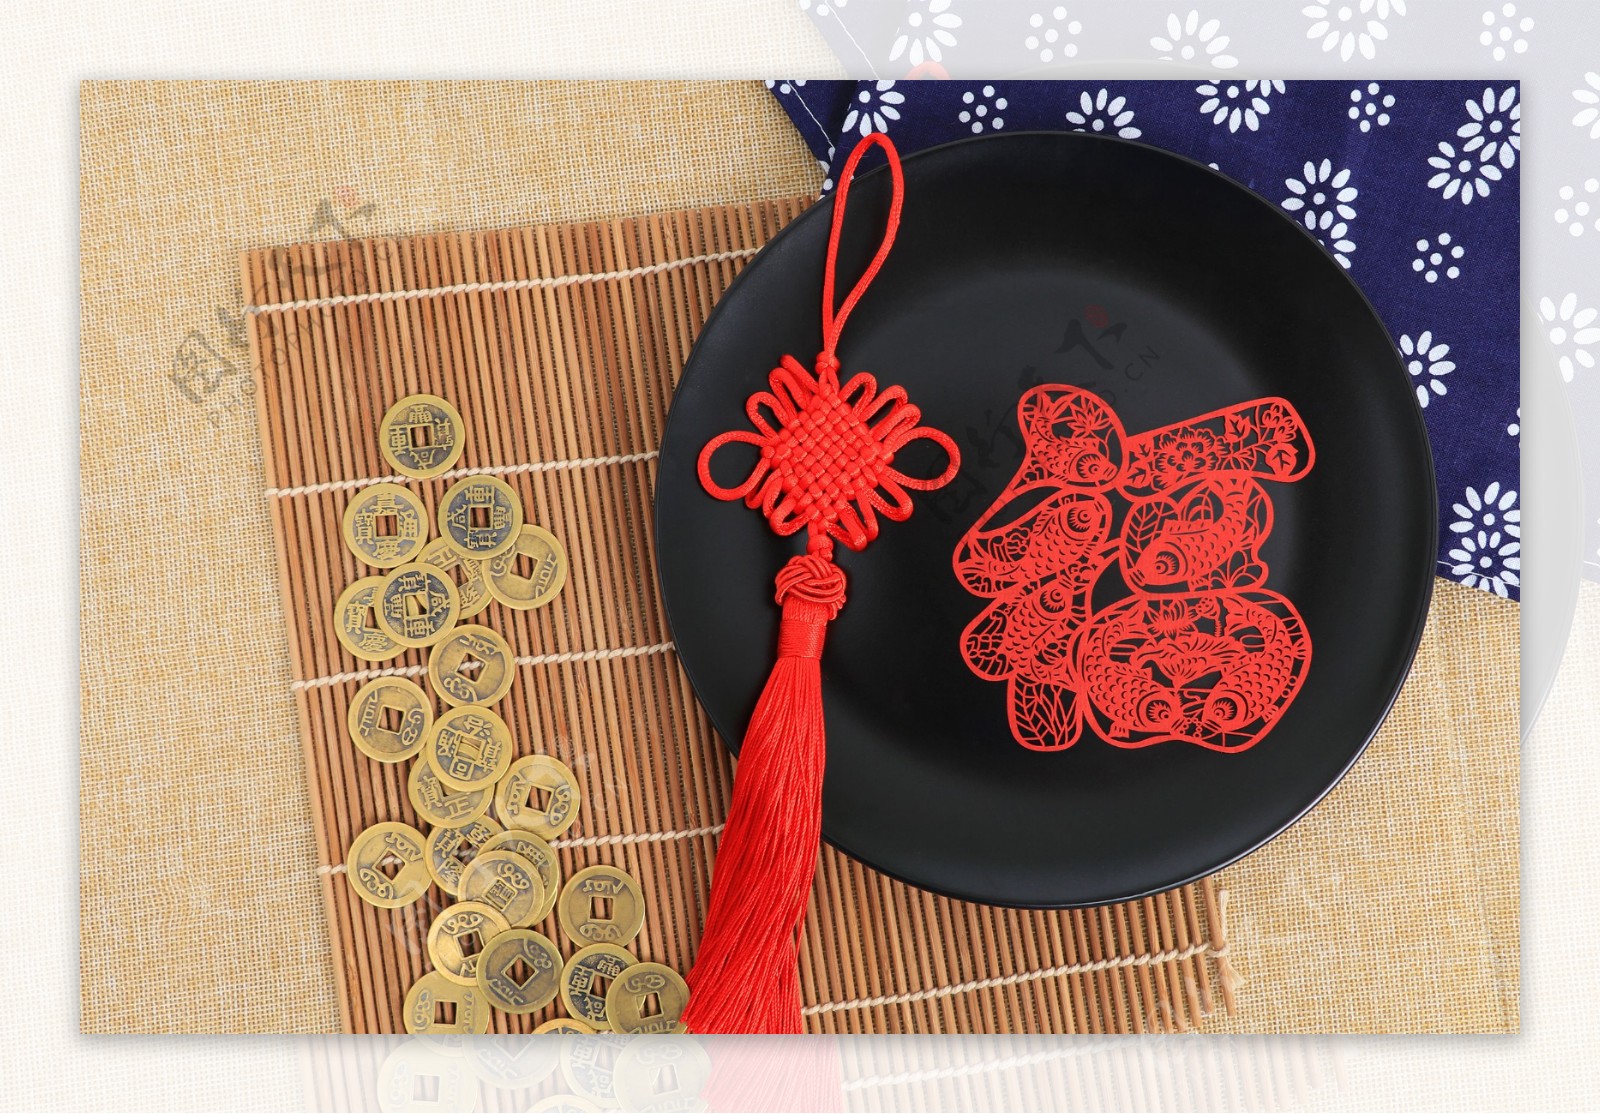 传统工艺品中国结剪纸